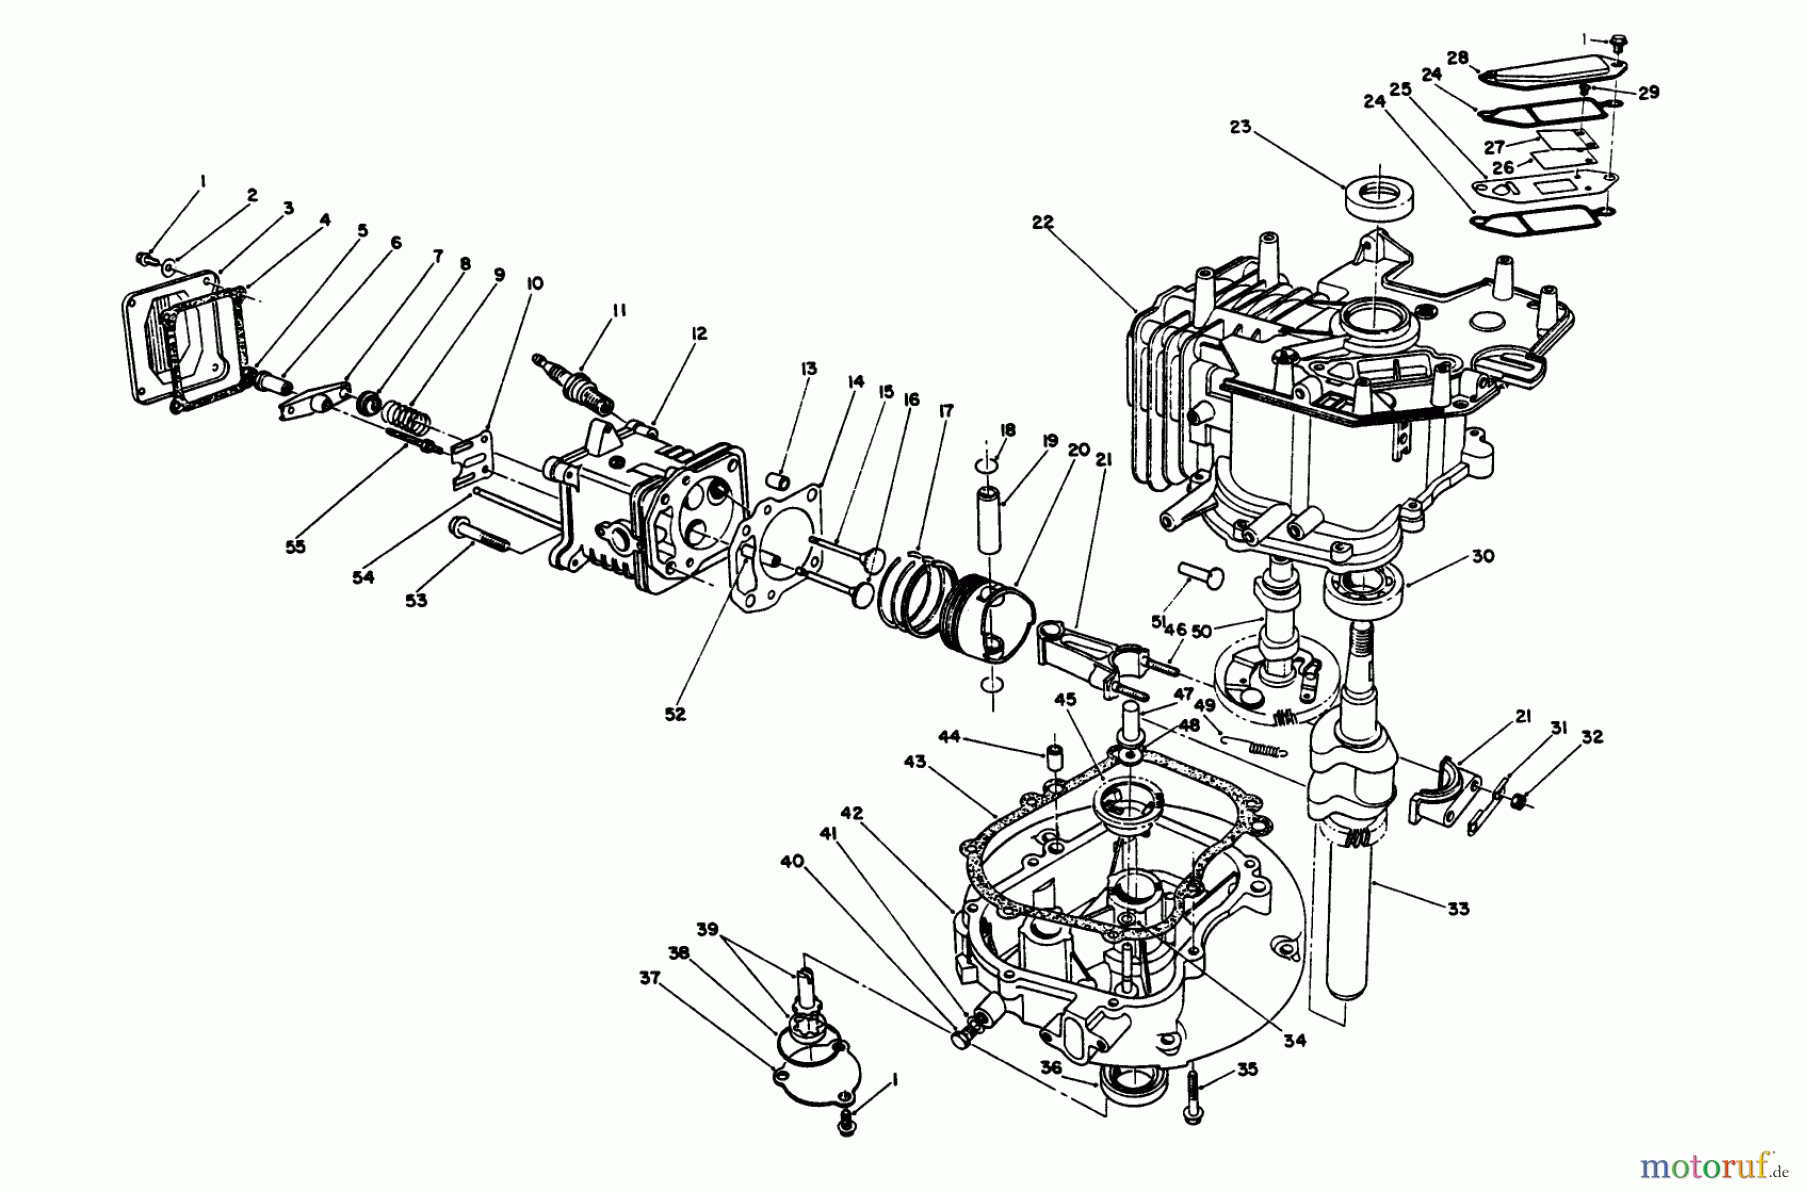  Toro Neu Mowers, Walk-Behind Seite 2 26625B - Toro Lawnmower, 1993 (3900001-3999999) CRANKCASE ASSEMBLY (ENGINE NO. VMM1-3)